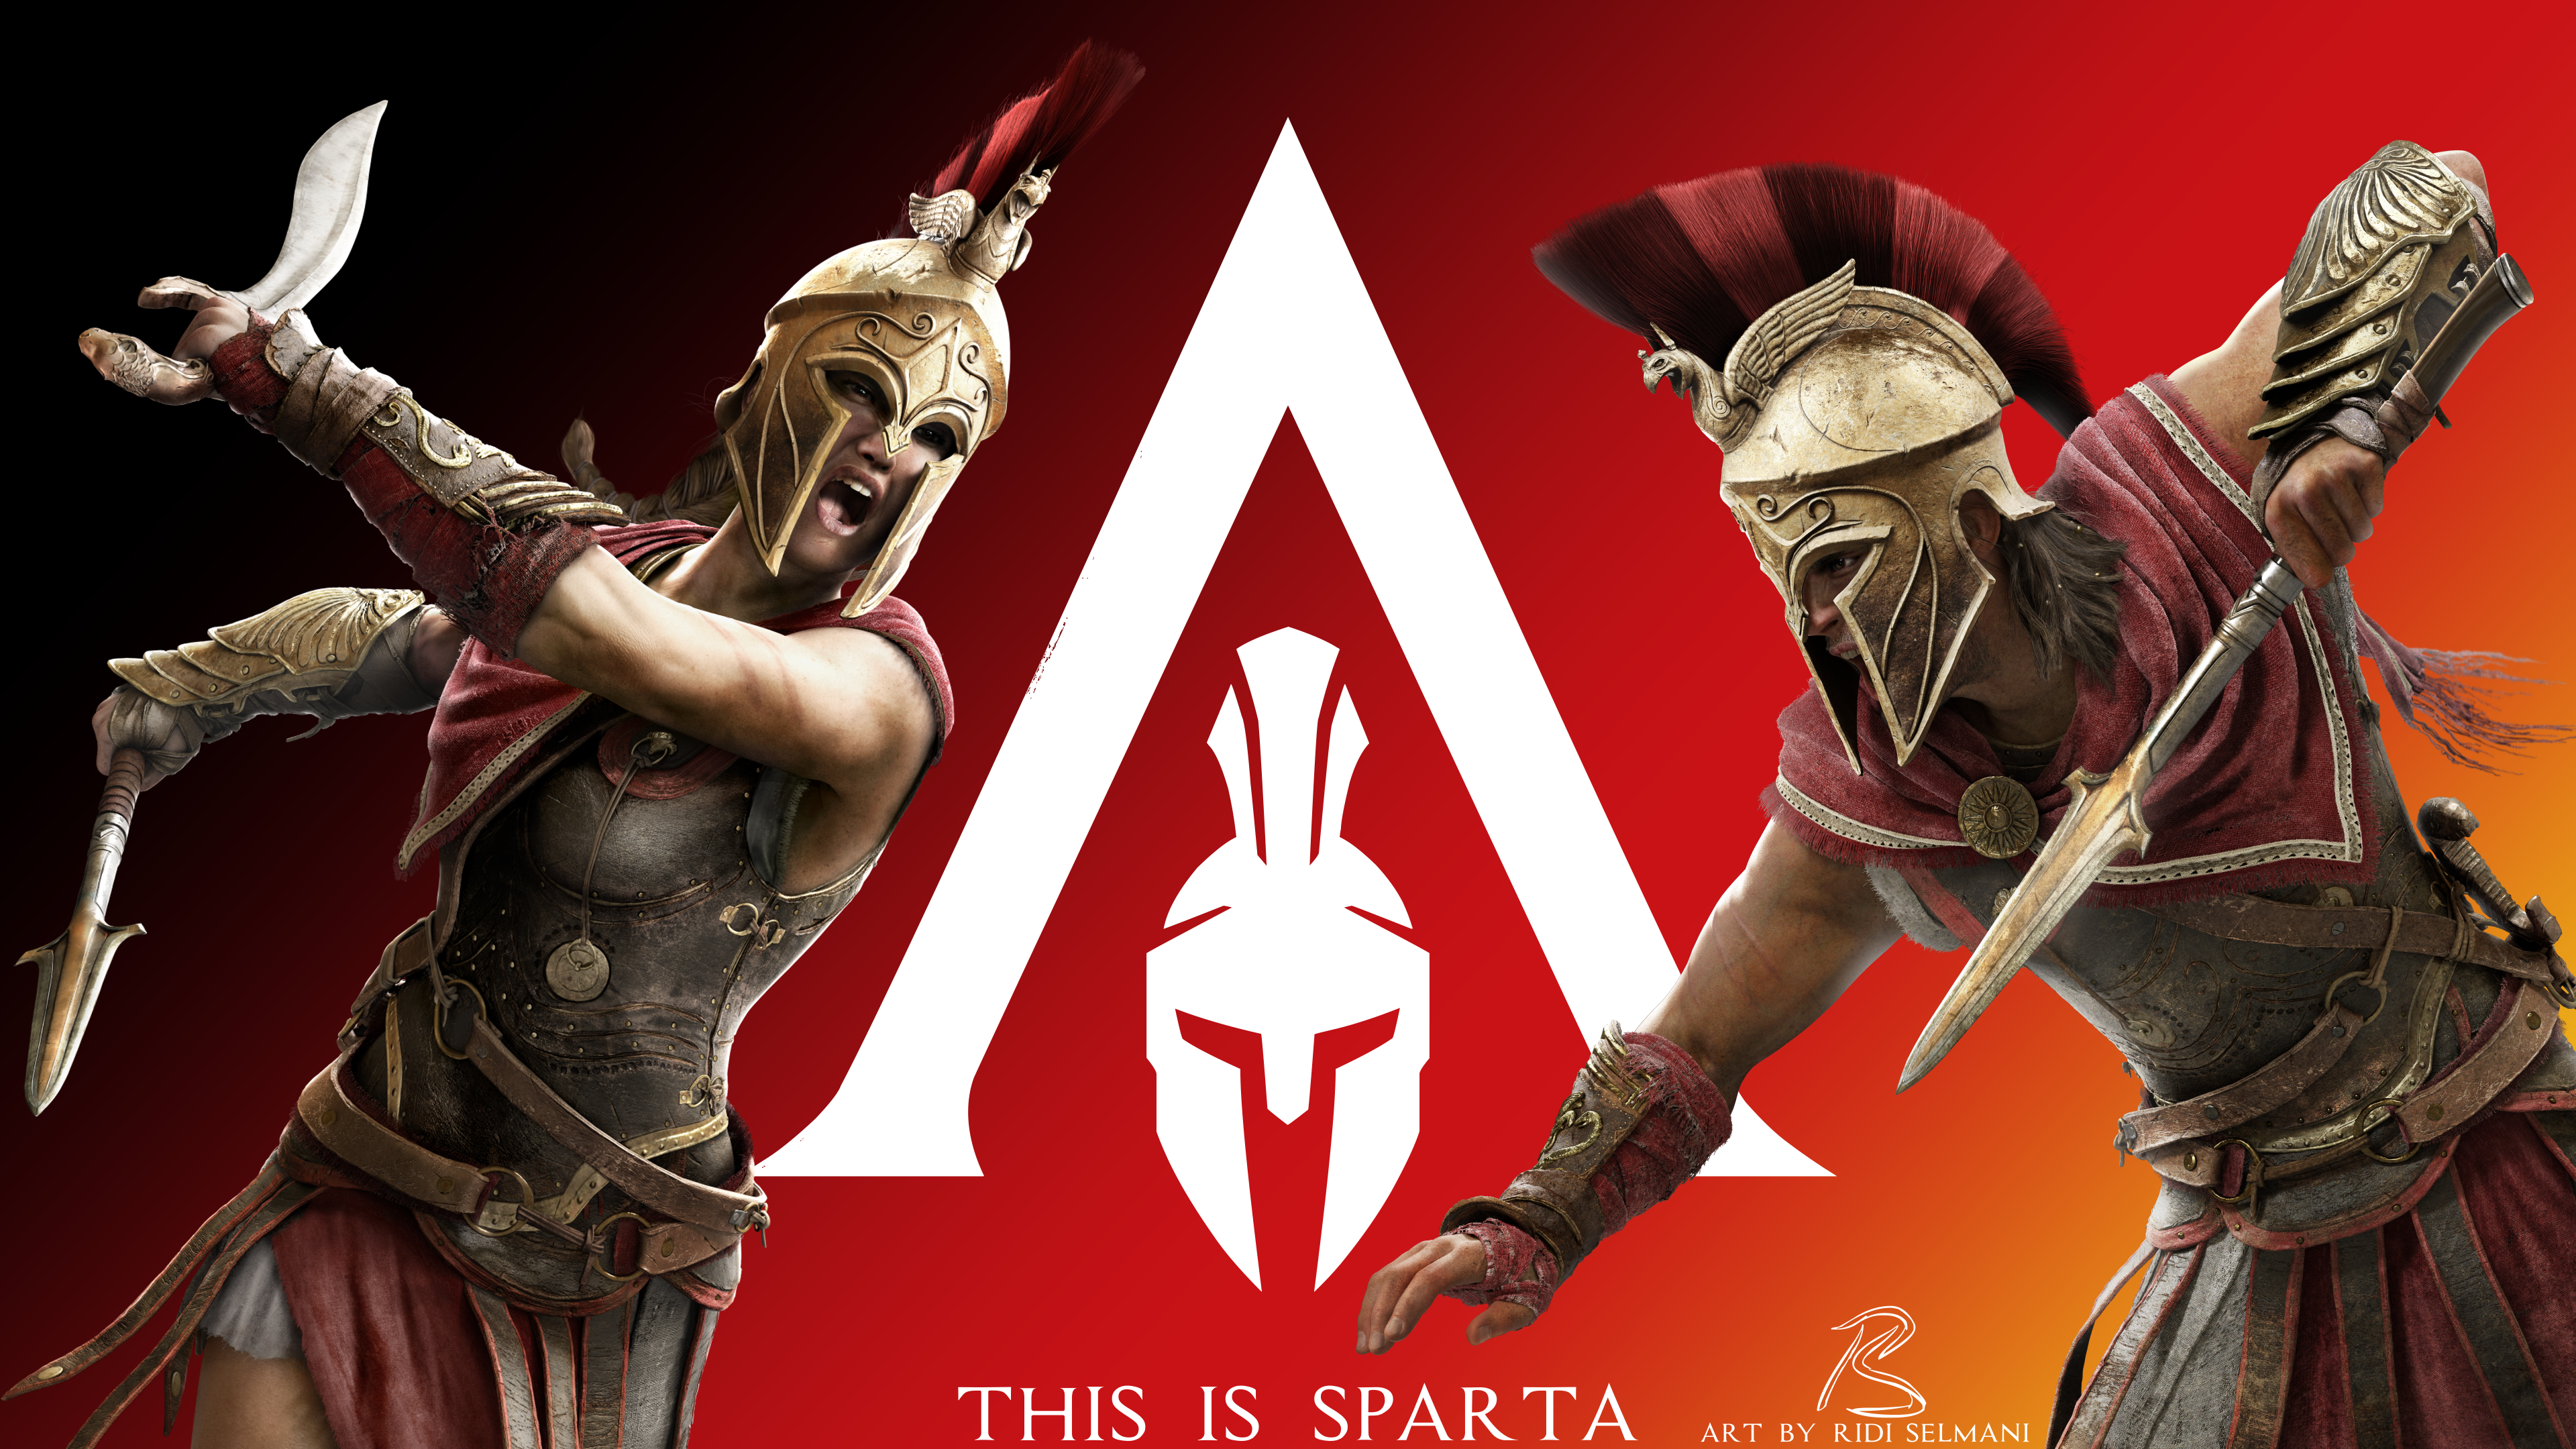 Assassin’s Creed Origins đã mang người chơi trở lại nơi khởi nguồn một đức tin khai sinh ra Hiệp hội Sát thủ, thì nay Assassin’s Creed Odyssey sẽ đưa người chơi đến với một cột mốc lịch sử xa hơn tận khoảng 400 năm – chiến tranh Peloponnesus nổi tiếng của Hy Lạp. 